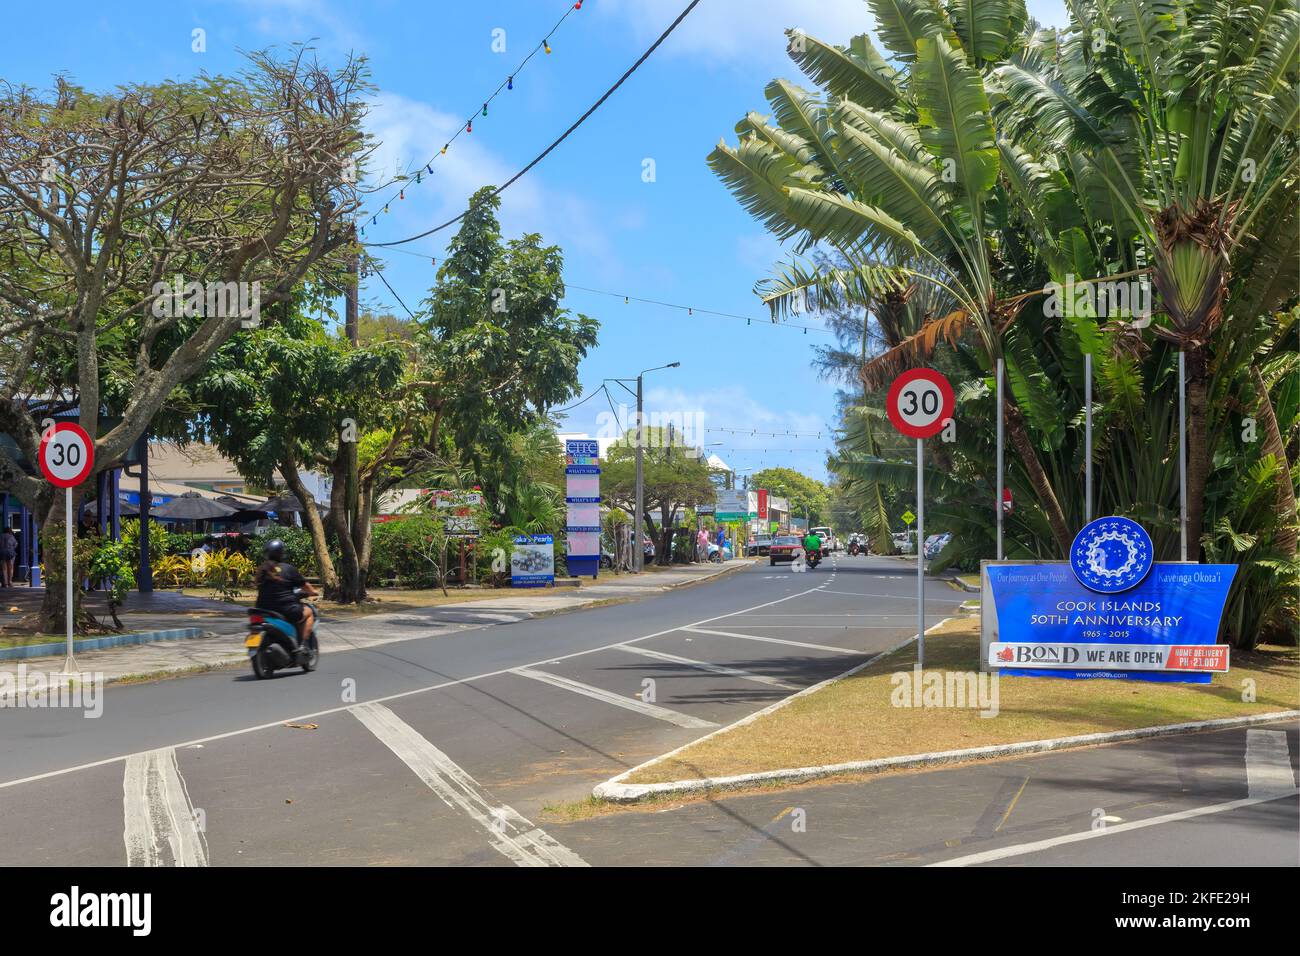 La città di Avarua, Rarotonga, Isole Cook. La strada principale, che porta all'area dello shopping. Un segno celebra il 50th° anniversario dell'indipendenza Foto Stock